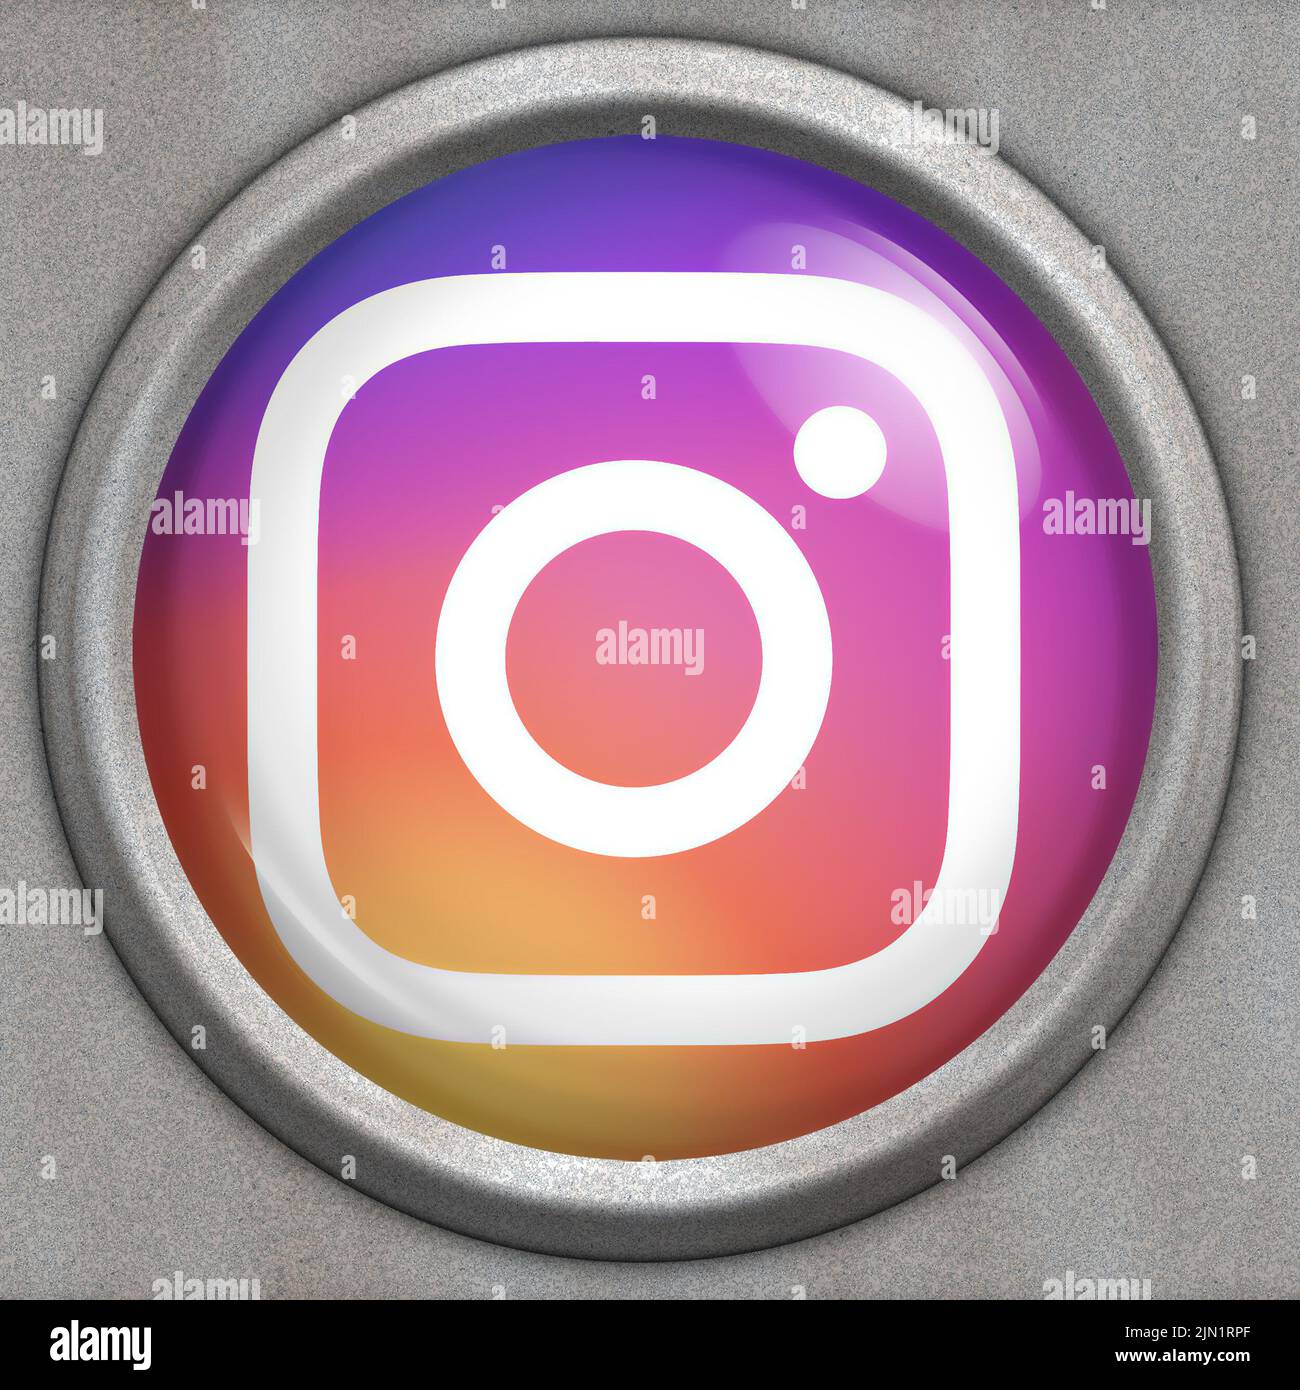 Bouton avec logo du service de médias sociaux Instagram Banque D'Images